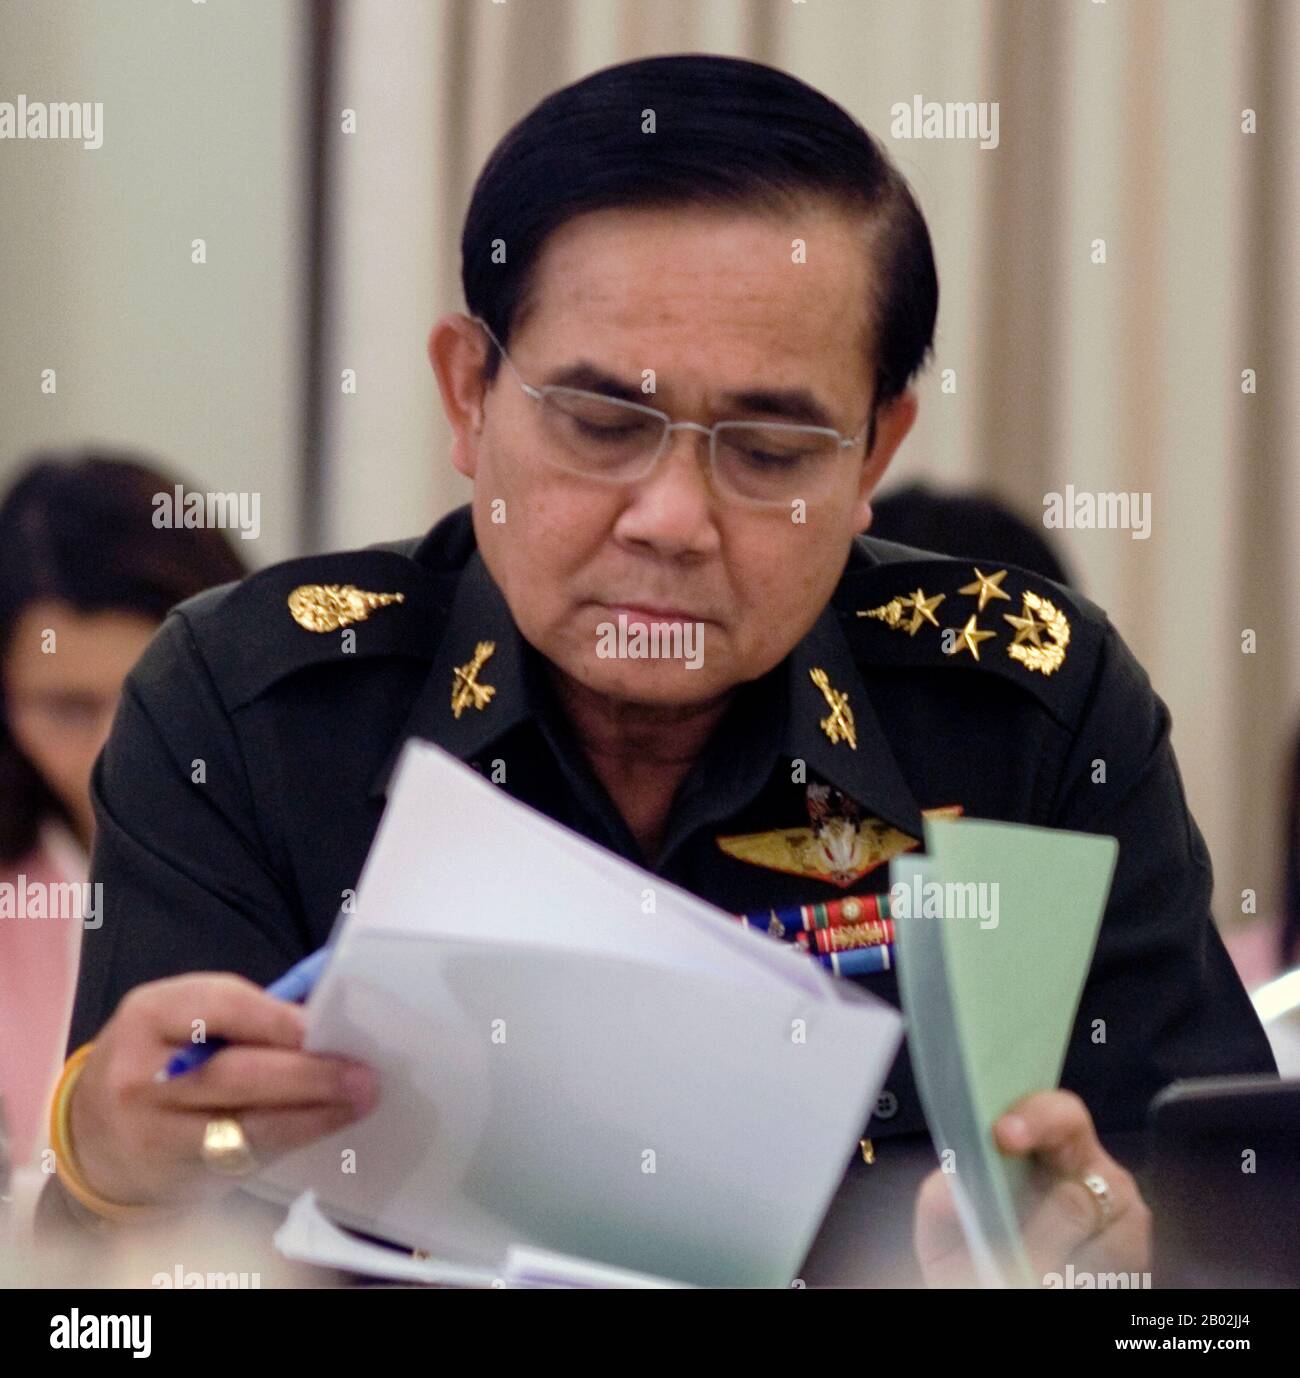 Prayuth Chan-ocha (Thai: ประยุทธ์ จันทร์โอชา; geboren am 21. März 1954) ist ein thailändischer Armeeoffizier, der gleichzeitig Kommandeur der Royal Thai Army und Führer des nationalen Rates für Frieden und Ordnung (NCPO) ist. Prayuth wurde als starker Royalist und Gegner des früheren Premierministers Thaksin Shinawatra charakterisiert. Während der politischen Krise, die im November 2013 begann und die Proteste gegen die Übergangsregierung von Yingluck Shinawatra einbezog, versuchte Prayuth, die Armeeutralität aufrechtzuerhalten. Am 22. Mai 2014 startete Prayuth jedoch einen Militärputsch gegen das Gouvernement Stockfoto